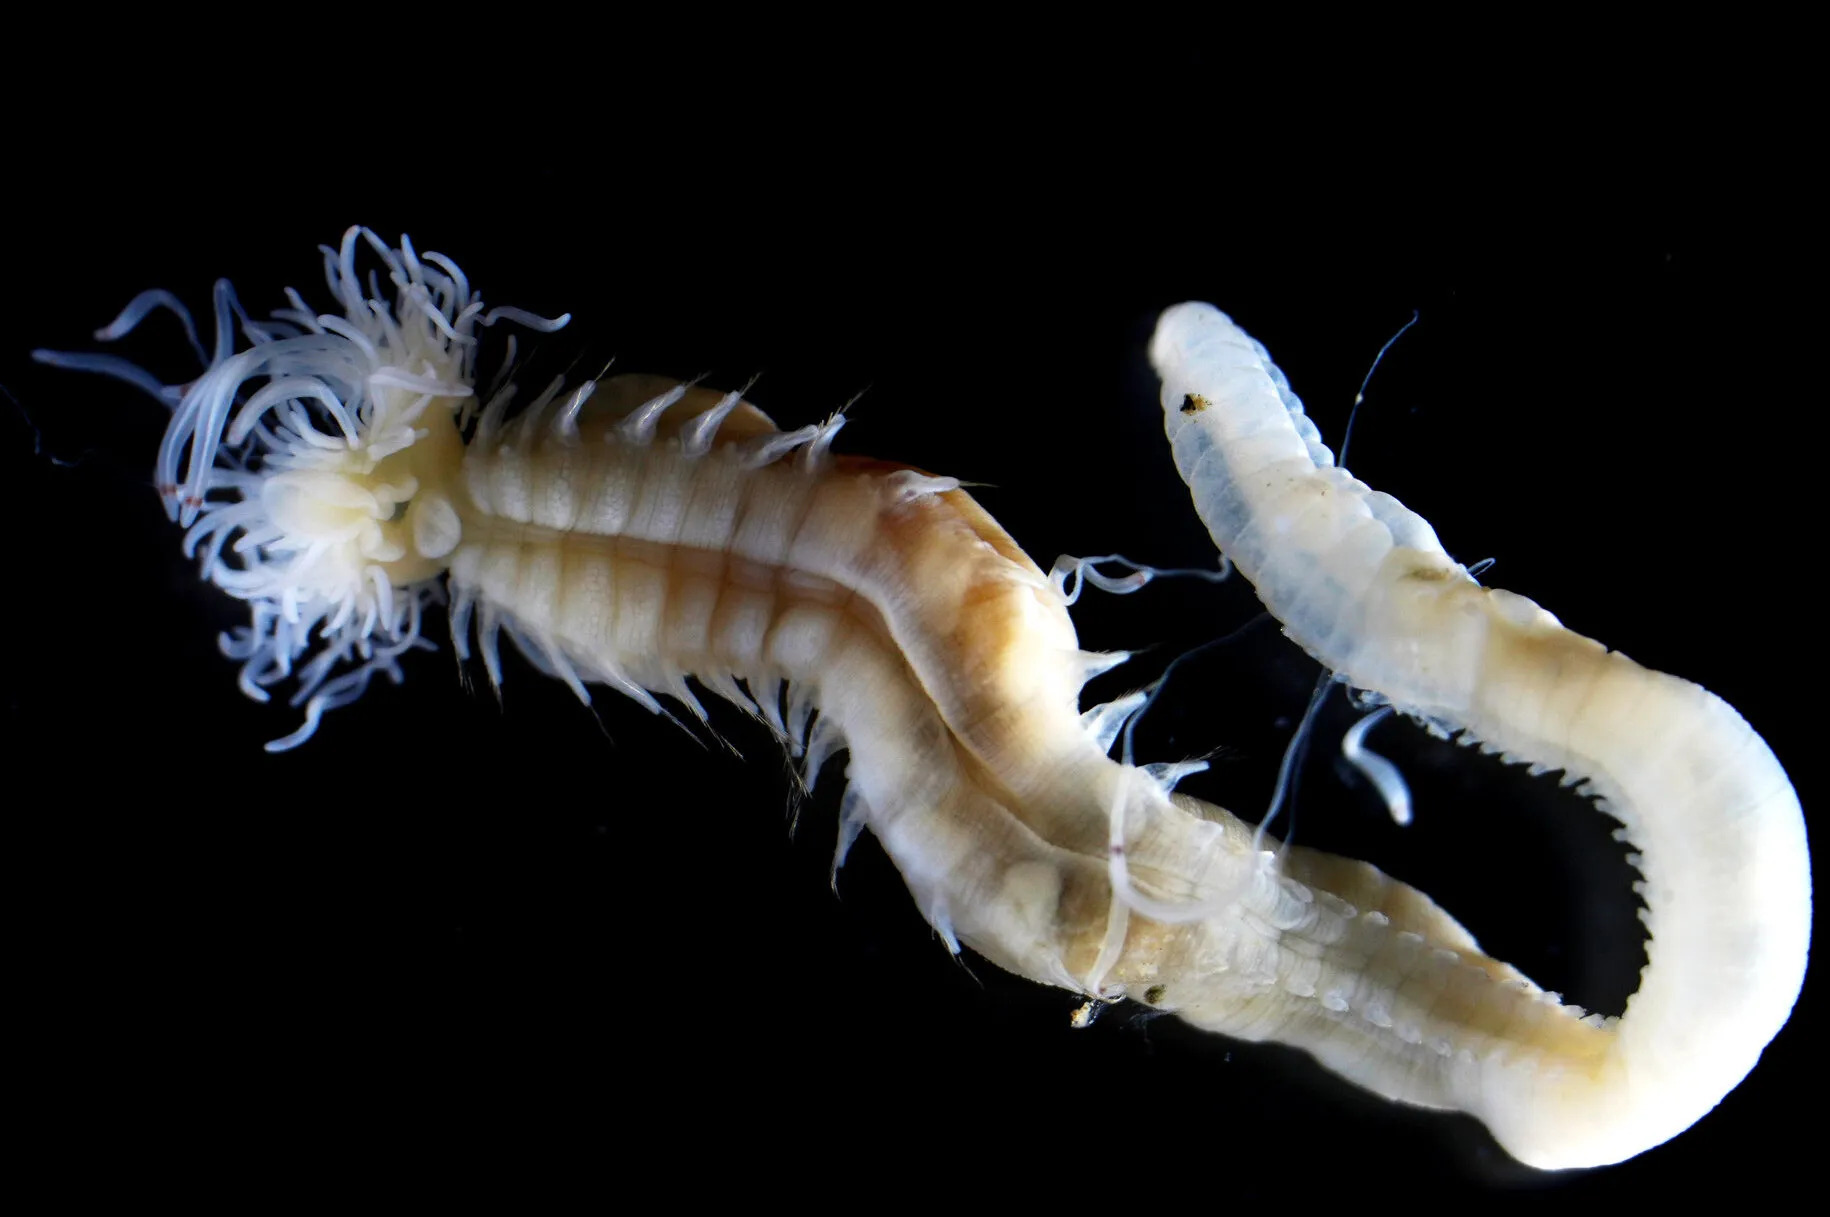 Descubren 3 especies nuevas de gusanos